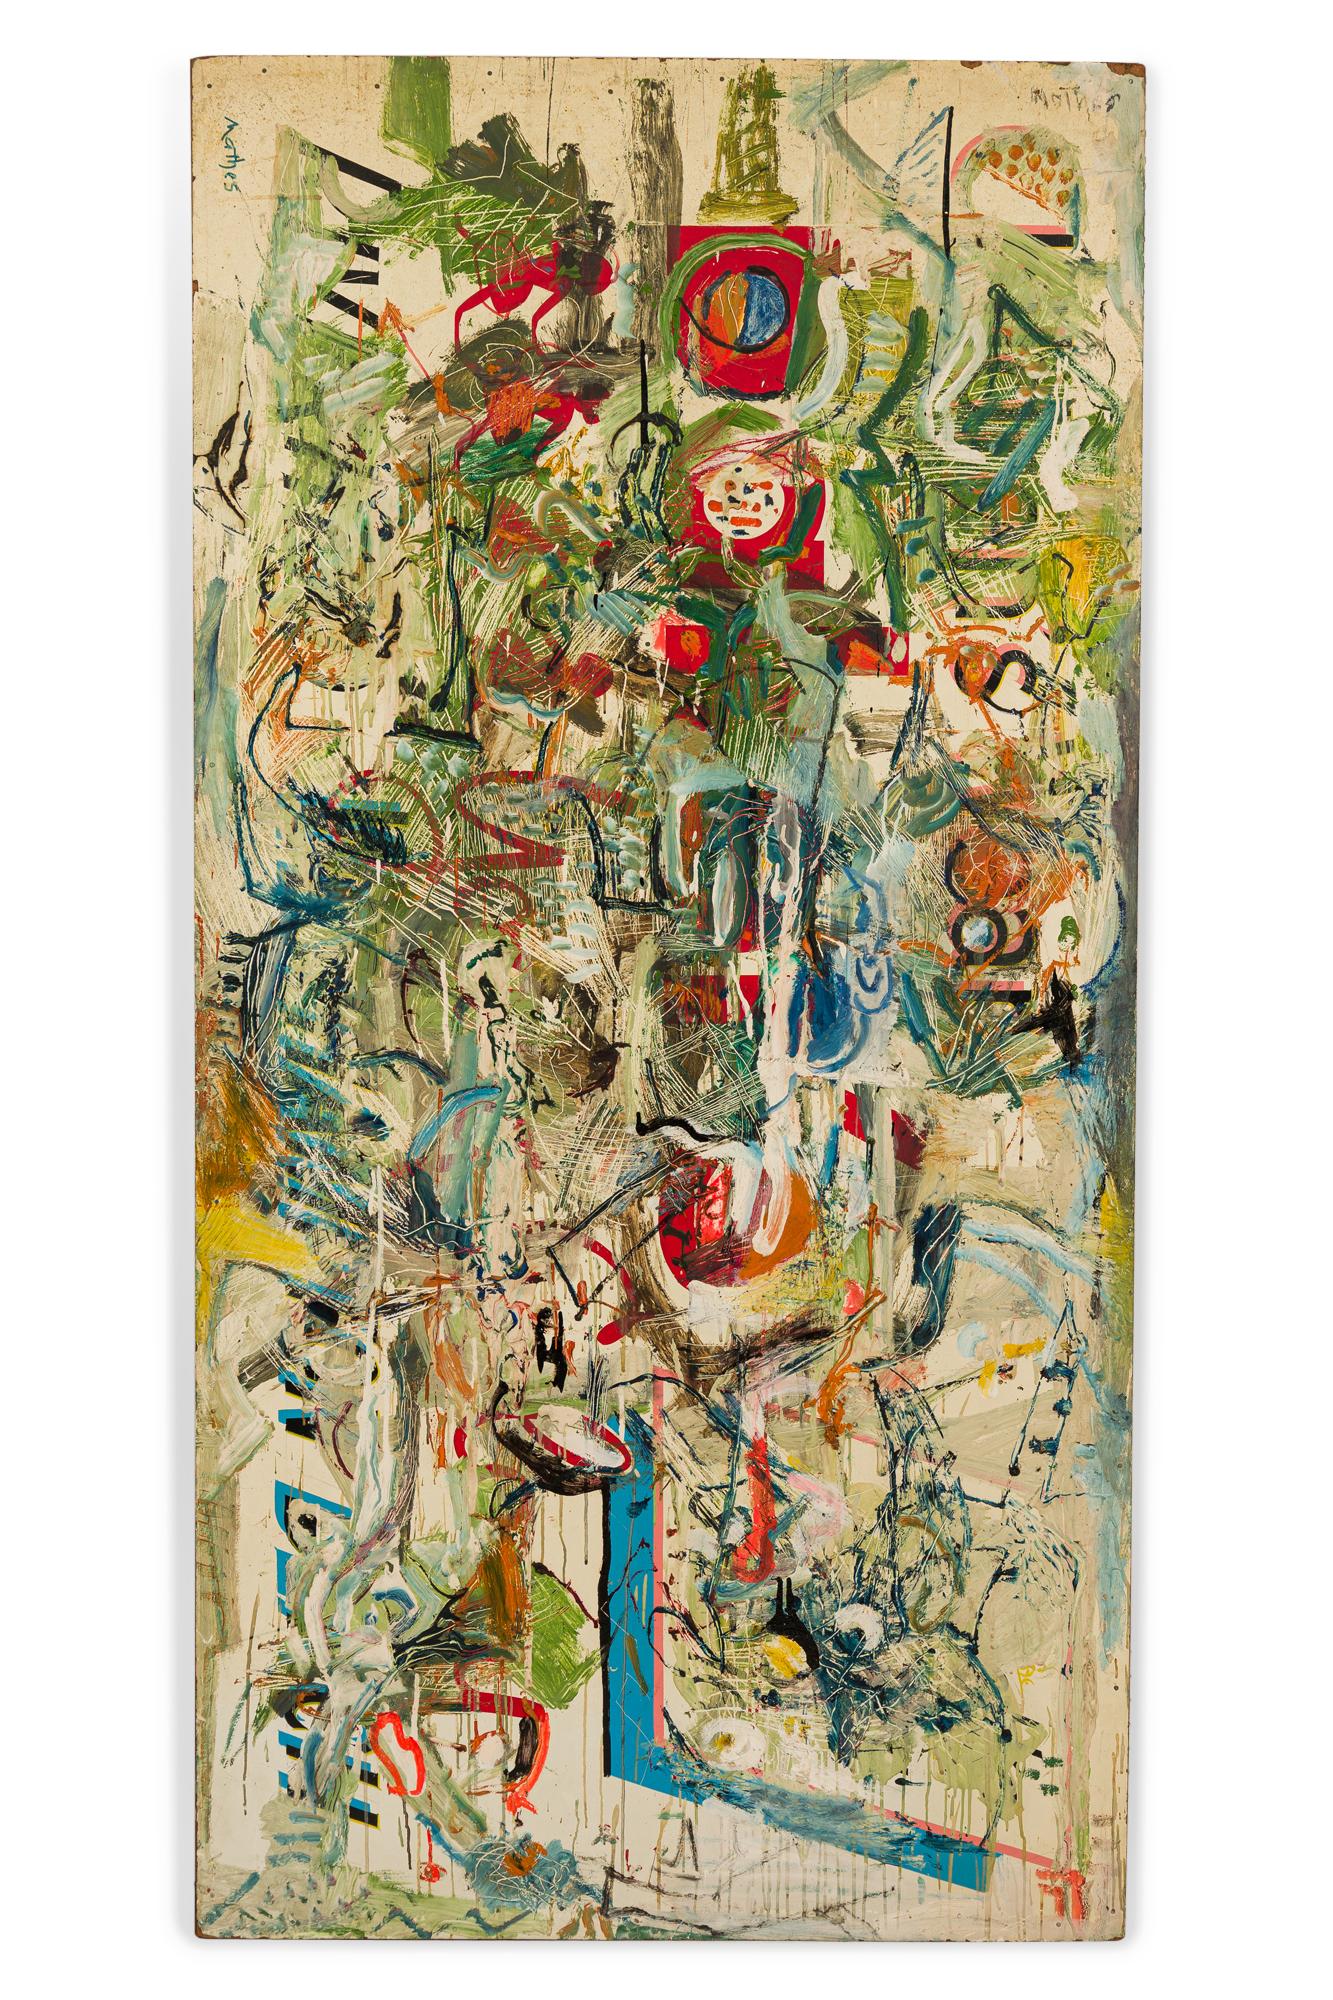 Peinture abstraite américaine du milieu du siècle (signée 1963) avec des formes et des lettres en vert, rouge, noir et bleu, peinte sur une section rectangulaire de panneau dur récupéré. (signé au dos et au recto : HARRY MATHES, voir photos).